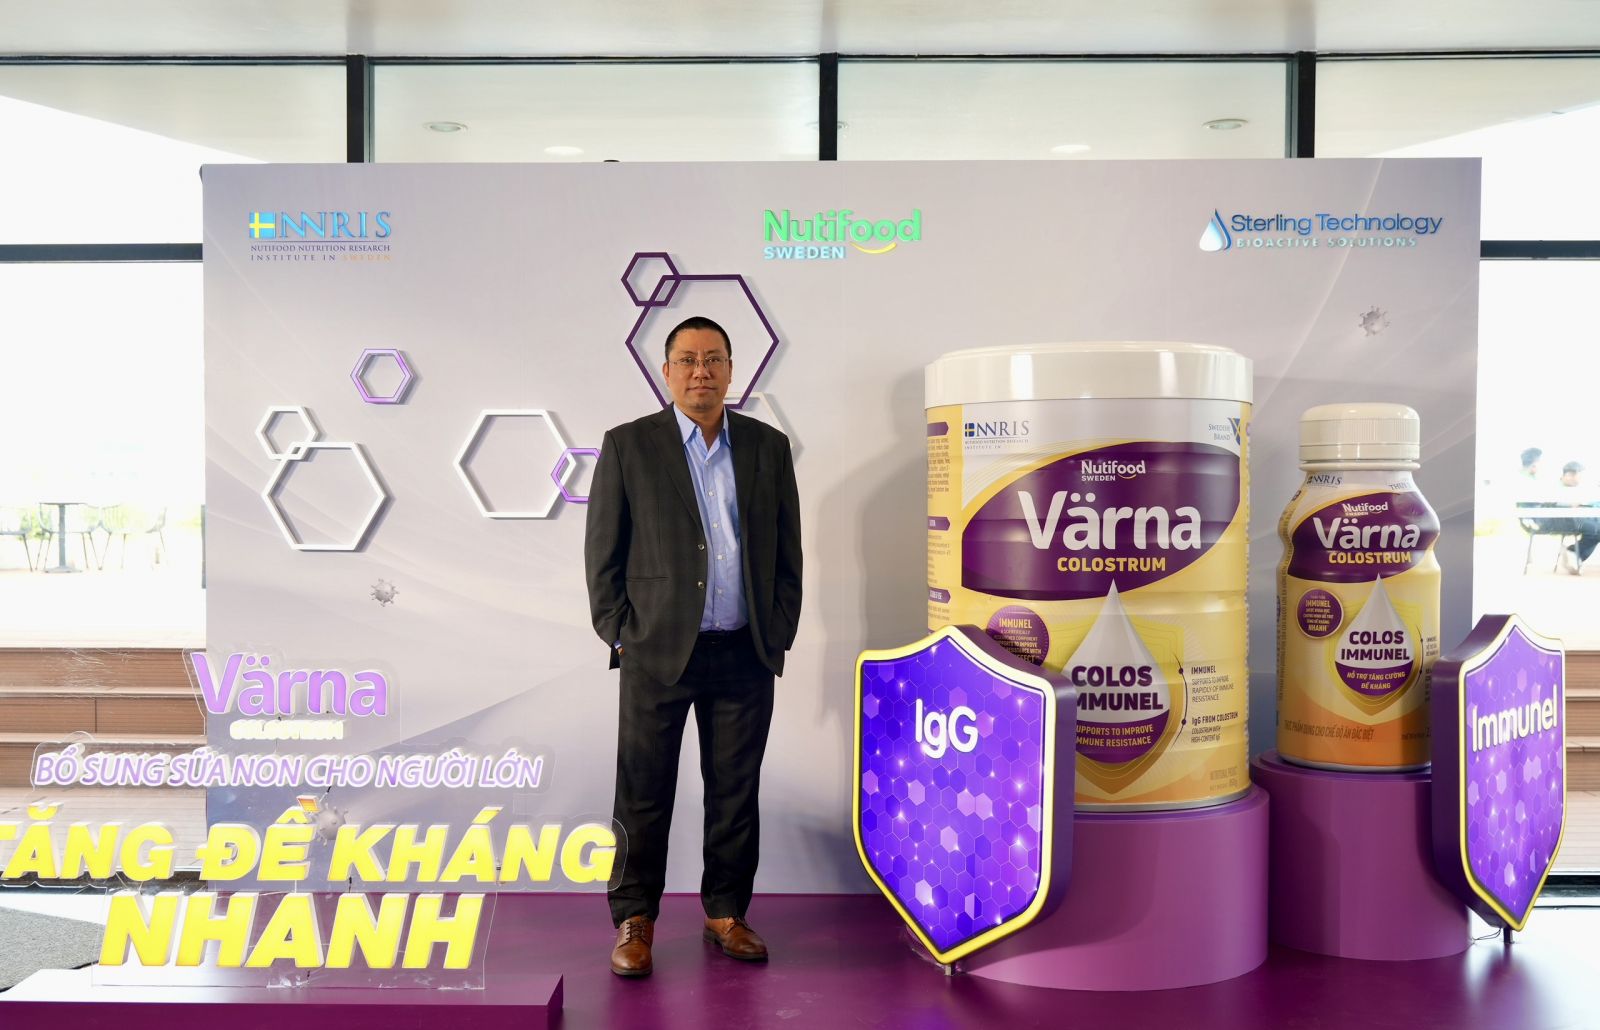 Nutifood Thụy Điển công bố ra mắt sản phẩm mới Värna Colostrum dành cho người Việt